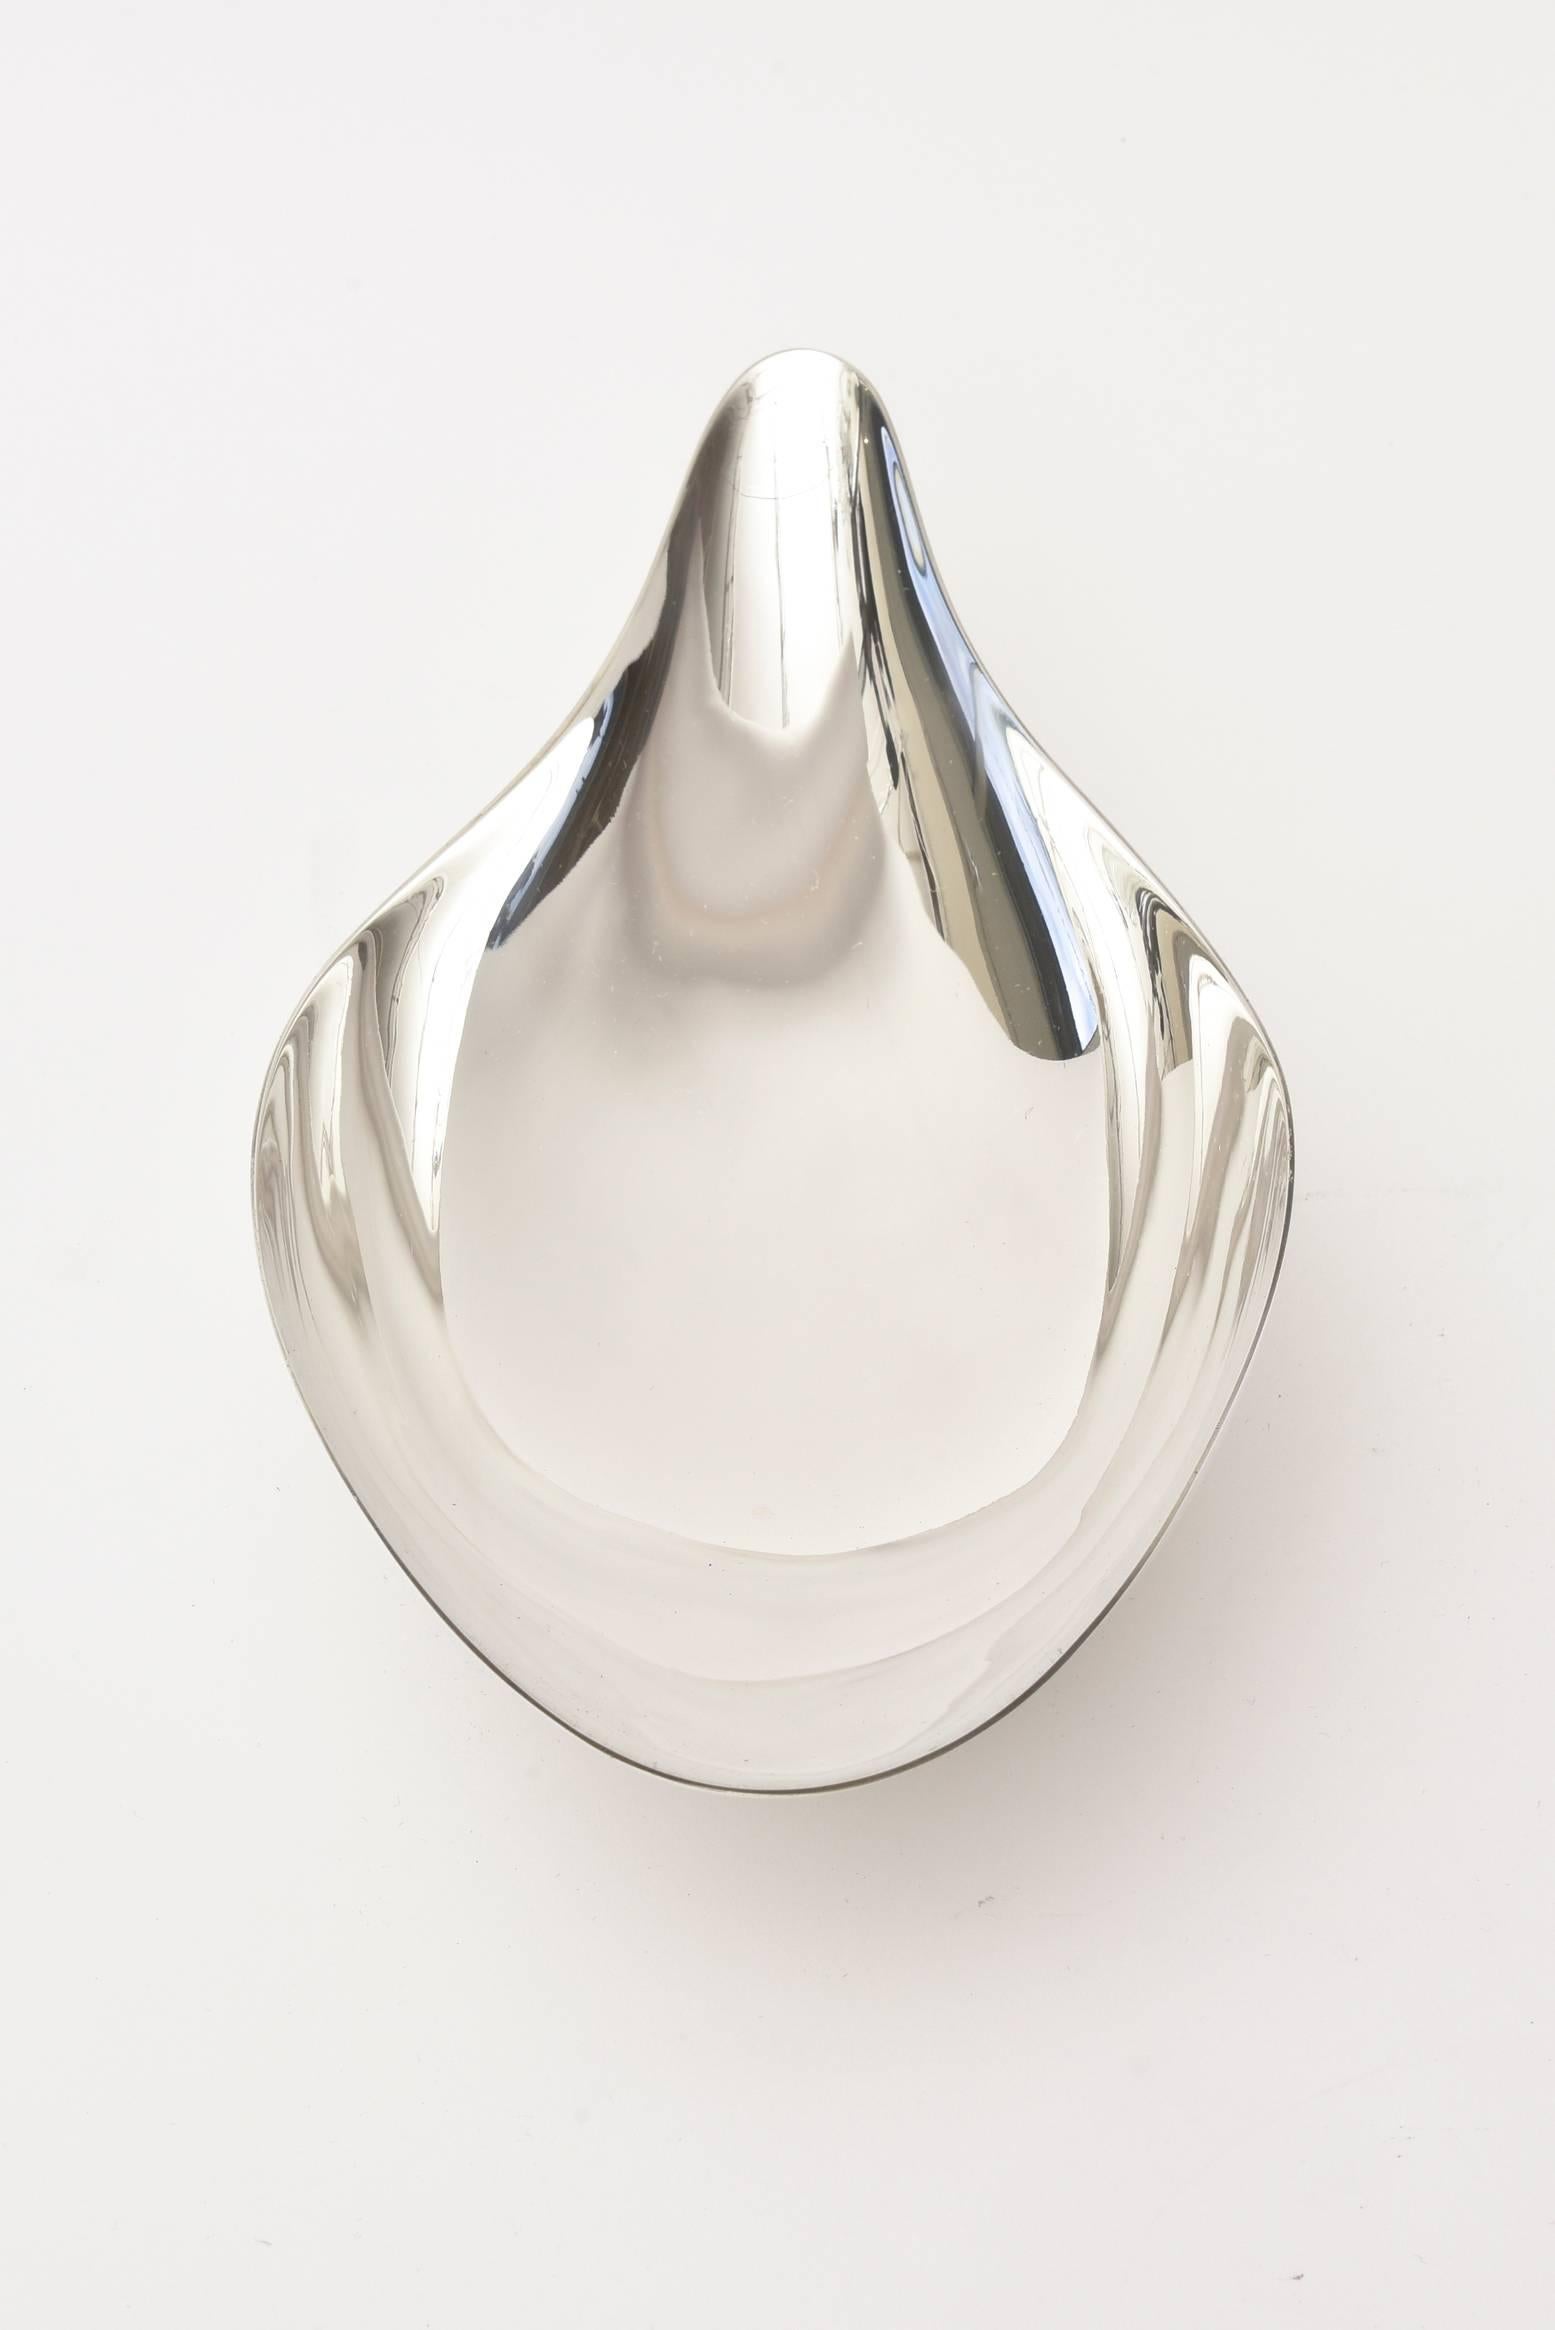 reed & barton silver bowl